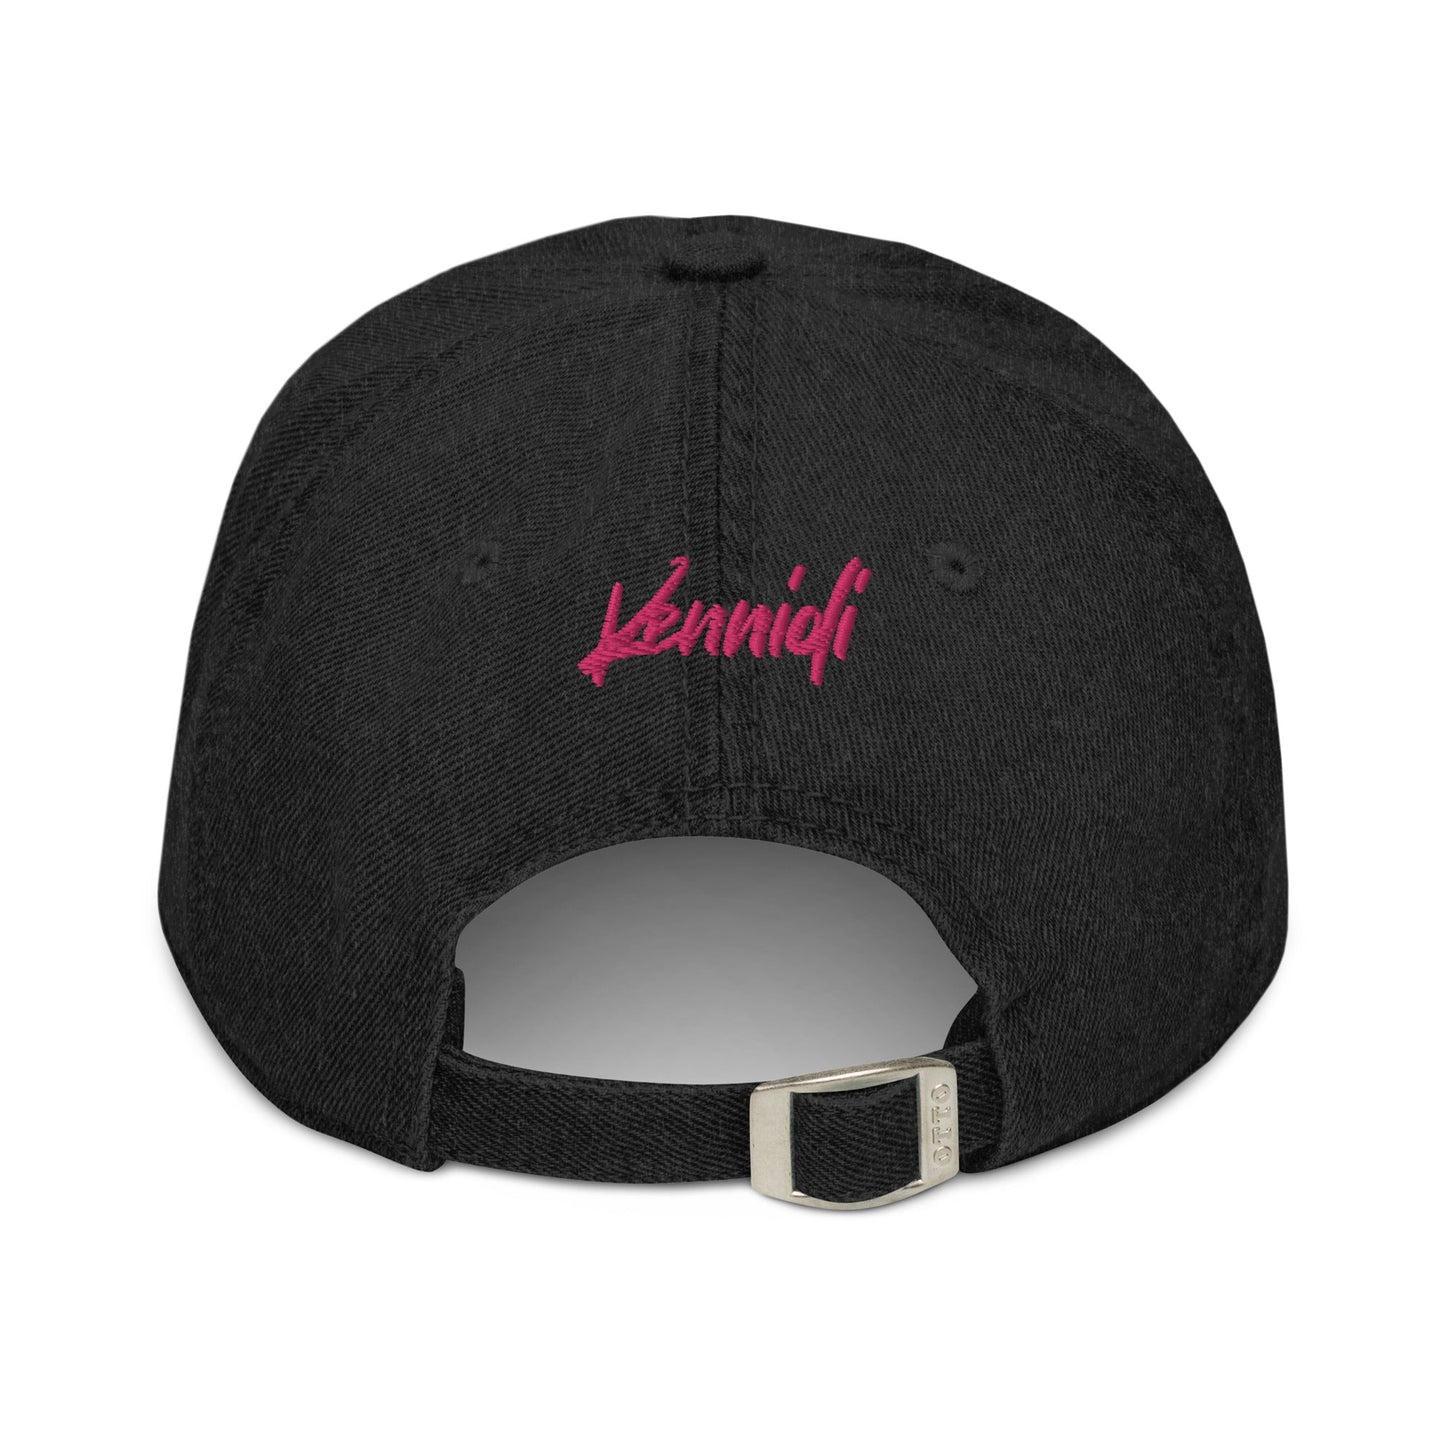 Femme Daddy Version 2 Denim Hat